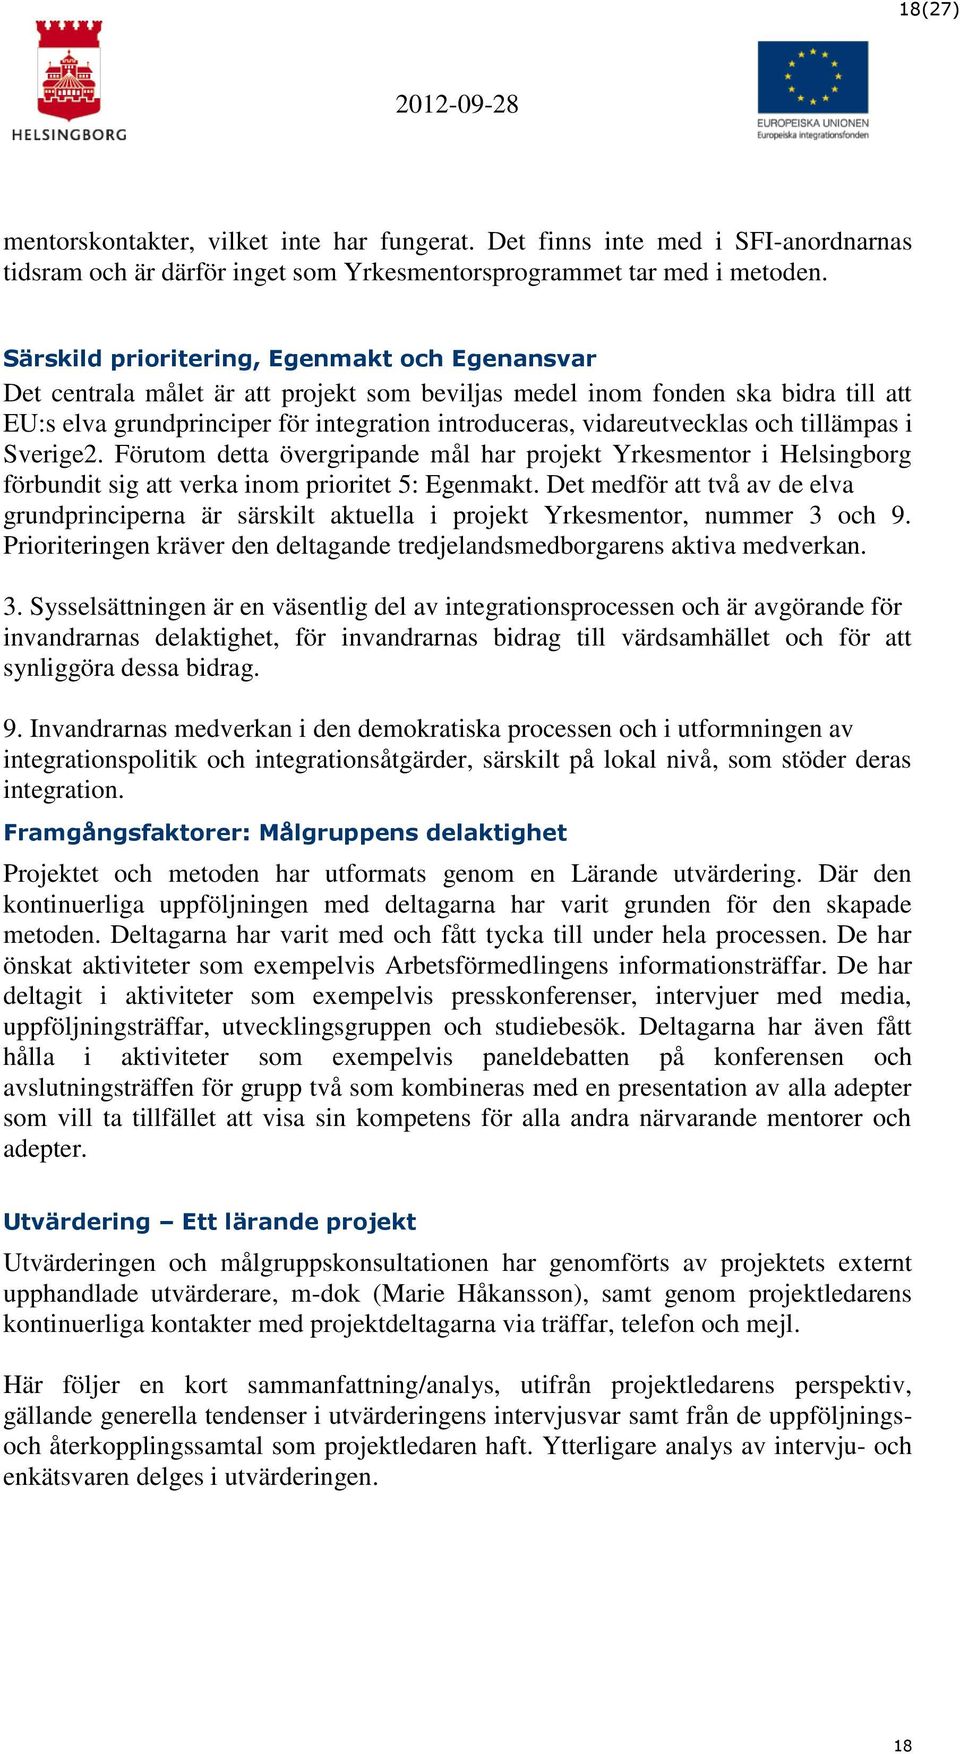 vidareutvecklas och tillämpas i Sverige2. Förutom detta övergripande mål har projekt Yrkesmentor i Helsingborg förbundit sig att verka inom prioritet 5: Egenmakt.